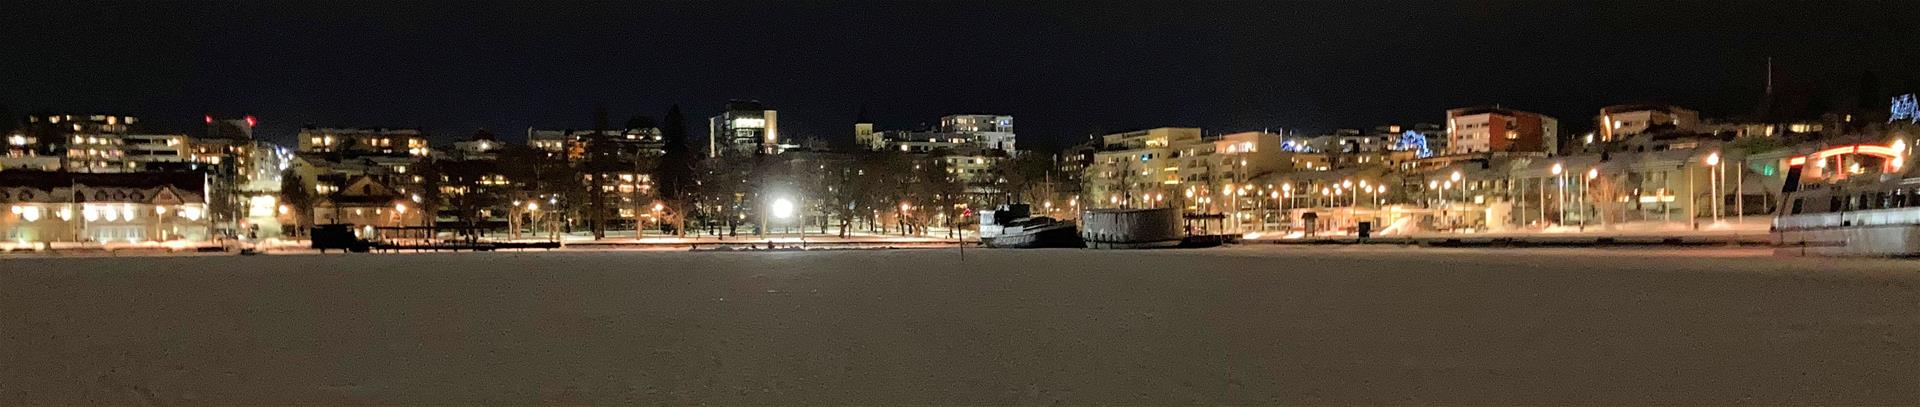 Kaupungin siluetti Kaupunginlahden jäältä päin iltavalaistuksessa